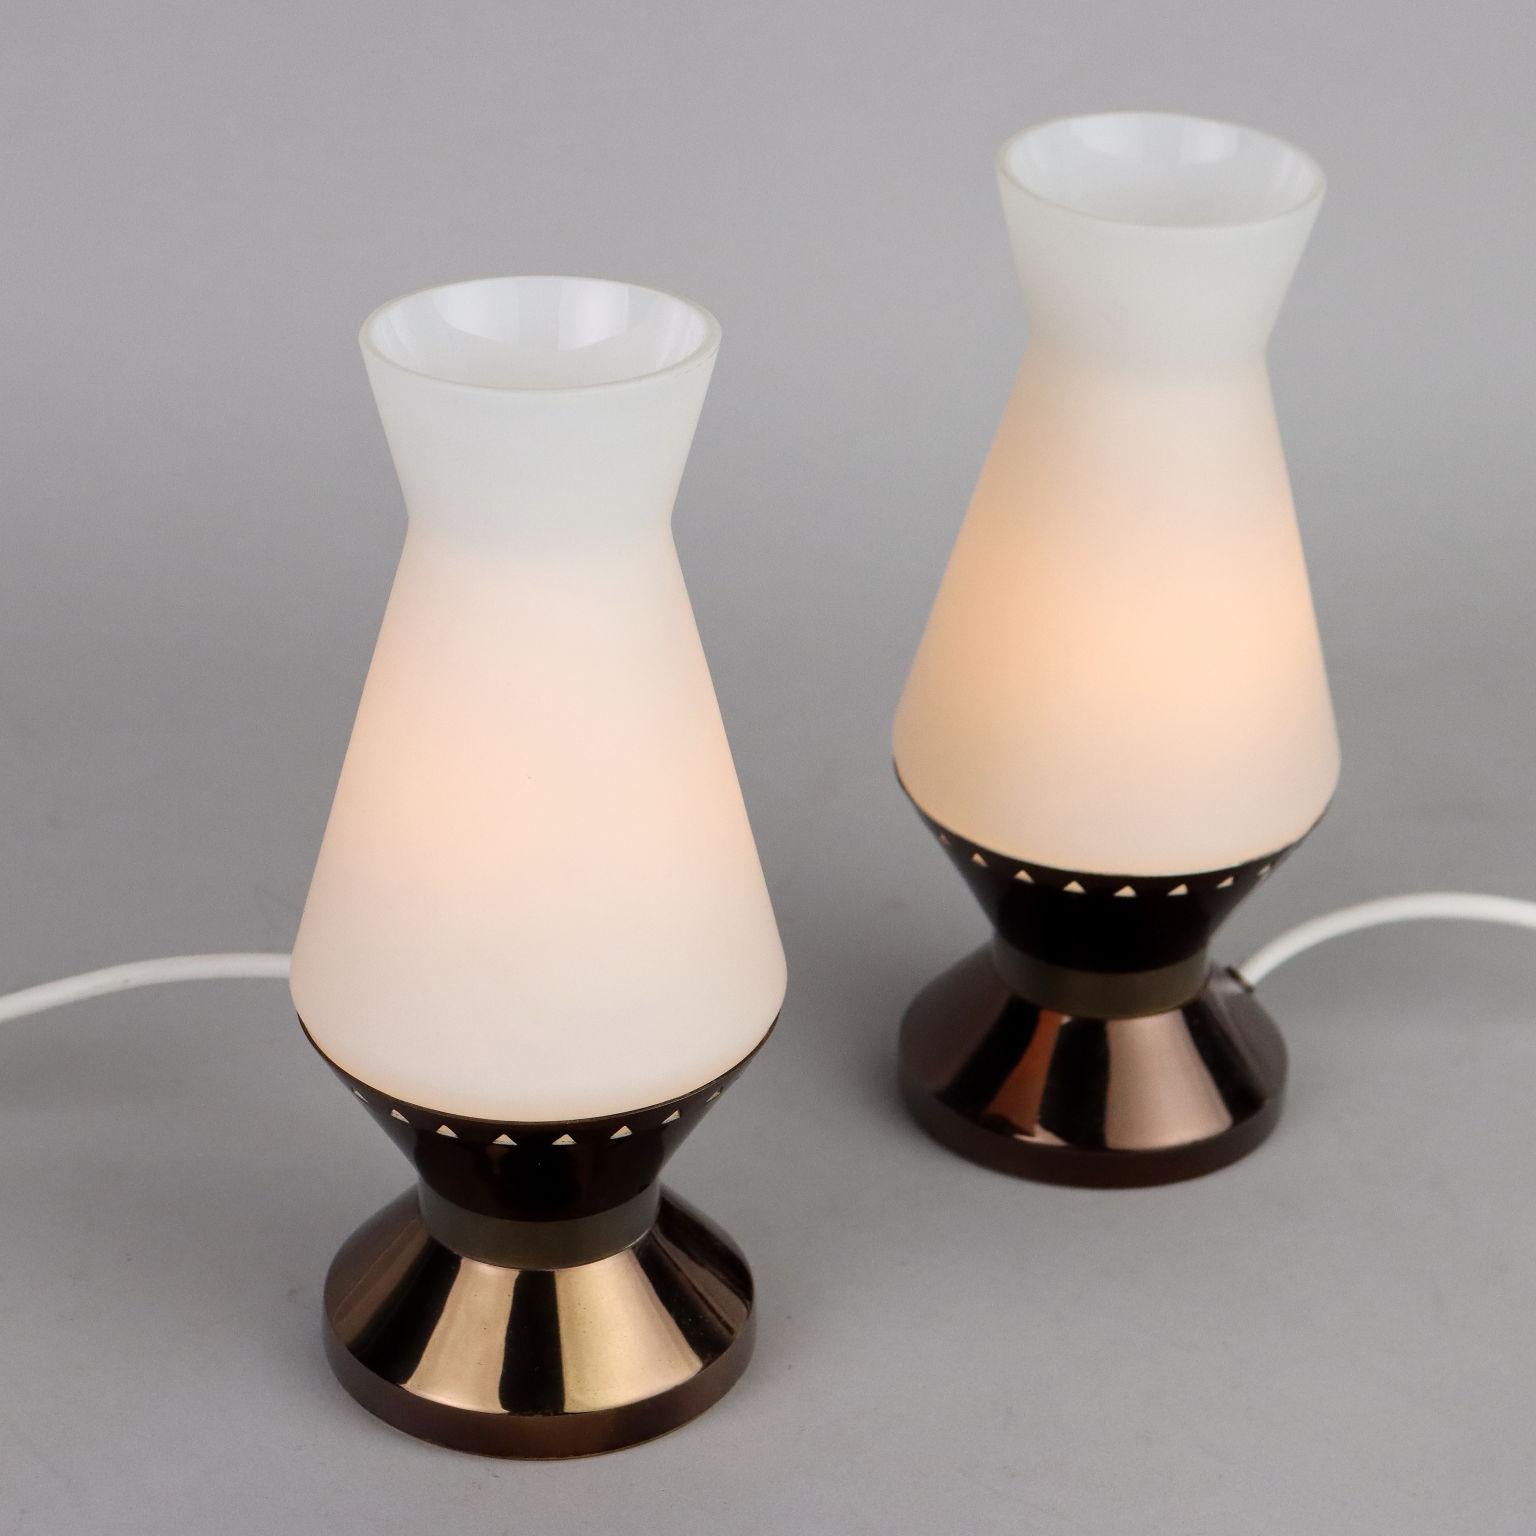 Coppia di lampade da tavolo in ottone e vetro opalino. Riportano il marchio della manifattura. Buone condizioni.